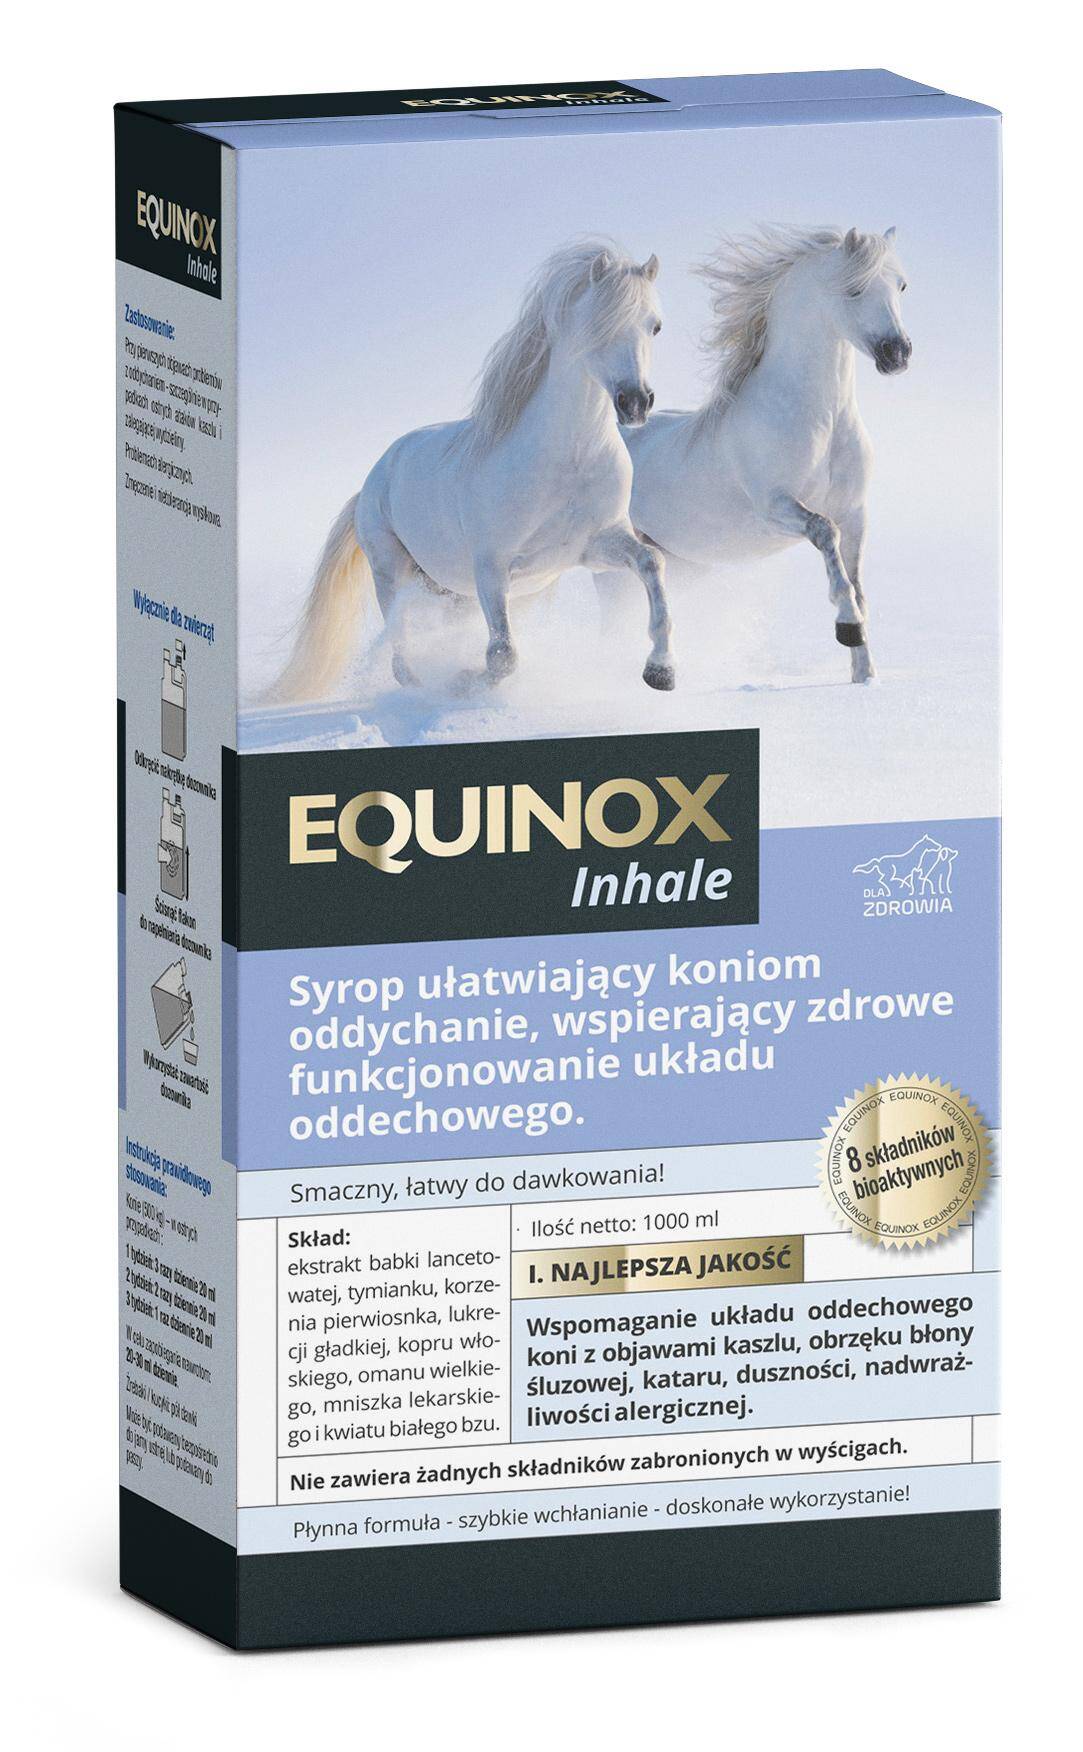 Equinox Inhale - suplement dla koni z problemami oddechowymi.